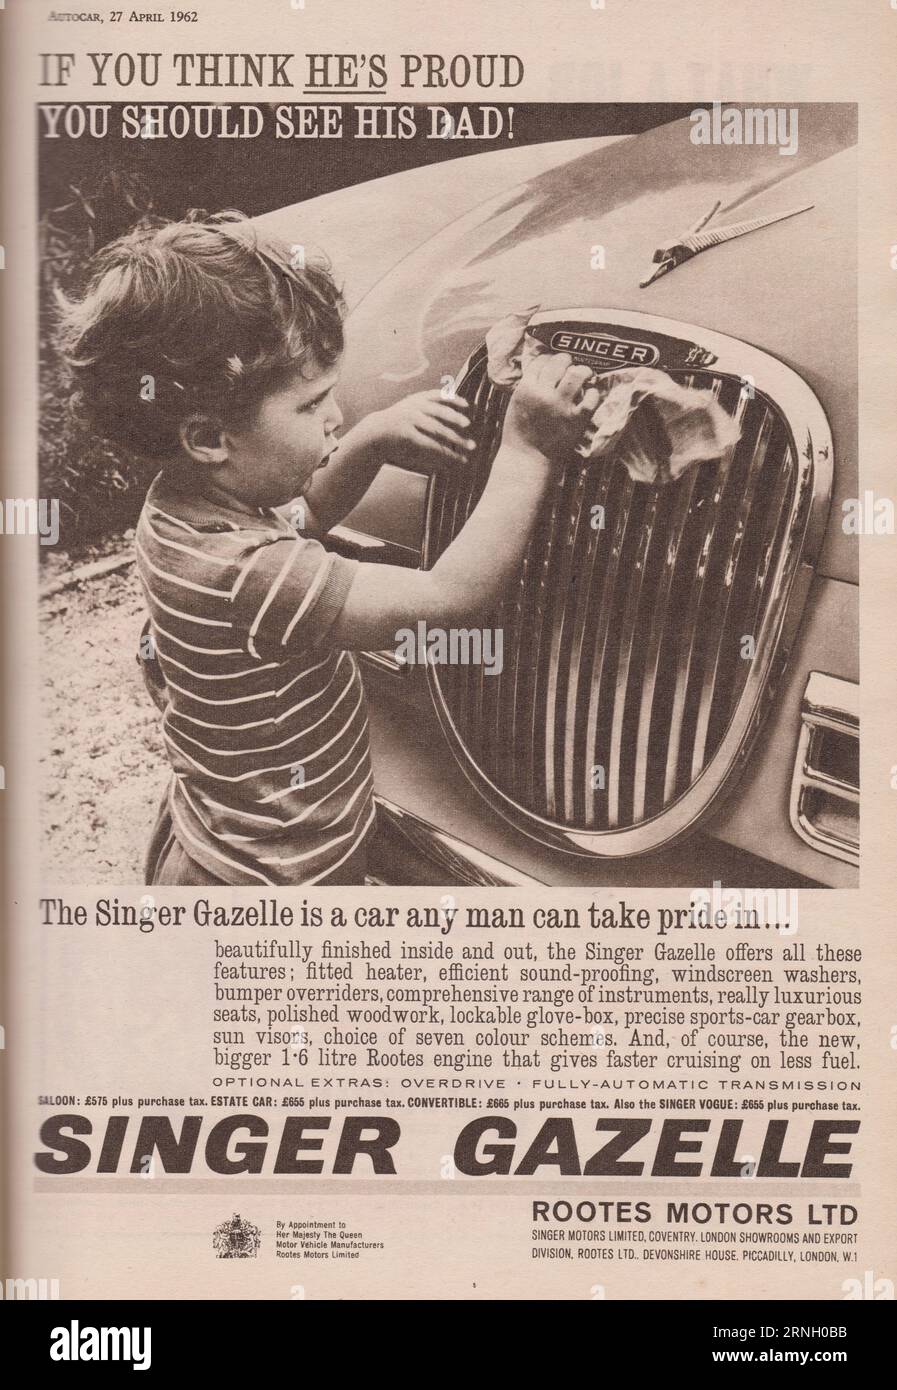 Rootes Motors Ltd vintage advert for Singer Gazelle. Stock Photo